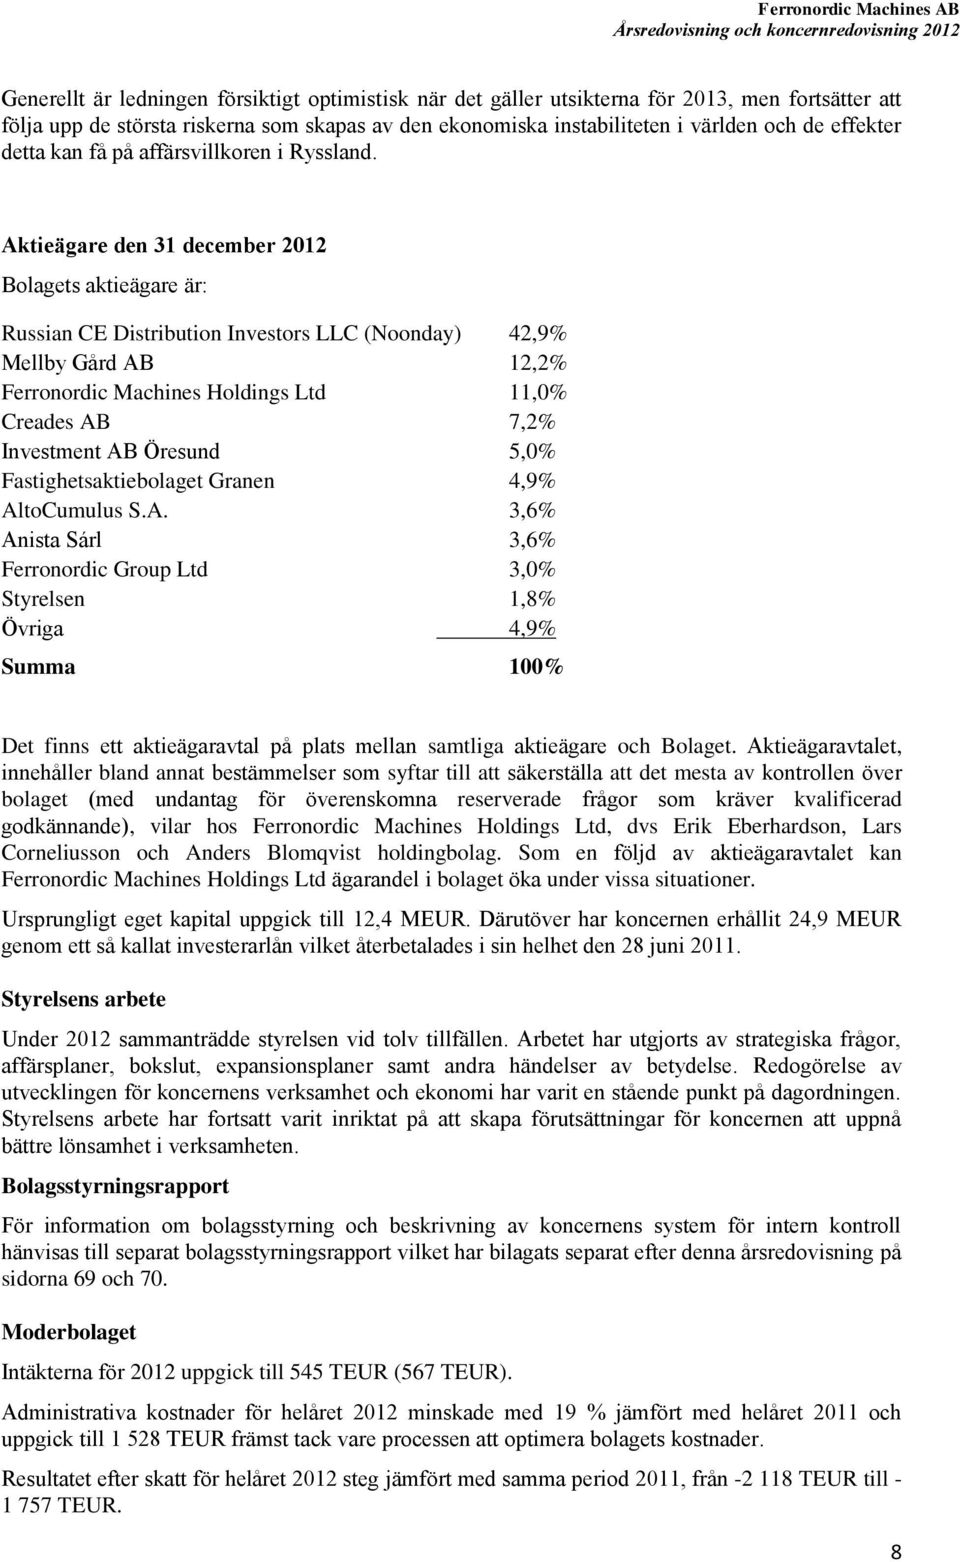 Aktieägare den 31 december 2012 Bolagets aktieägare är: Russian CE Distribution Investors LLC (Noonday) 42,9% Mellby Gård AB 12,2% Ferronordic Machines Holdings Ltd 11,0% Creades AB 7,2% Investment